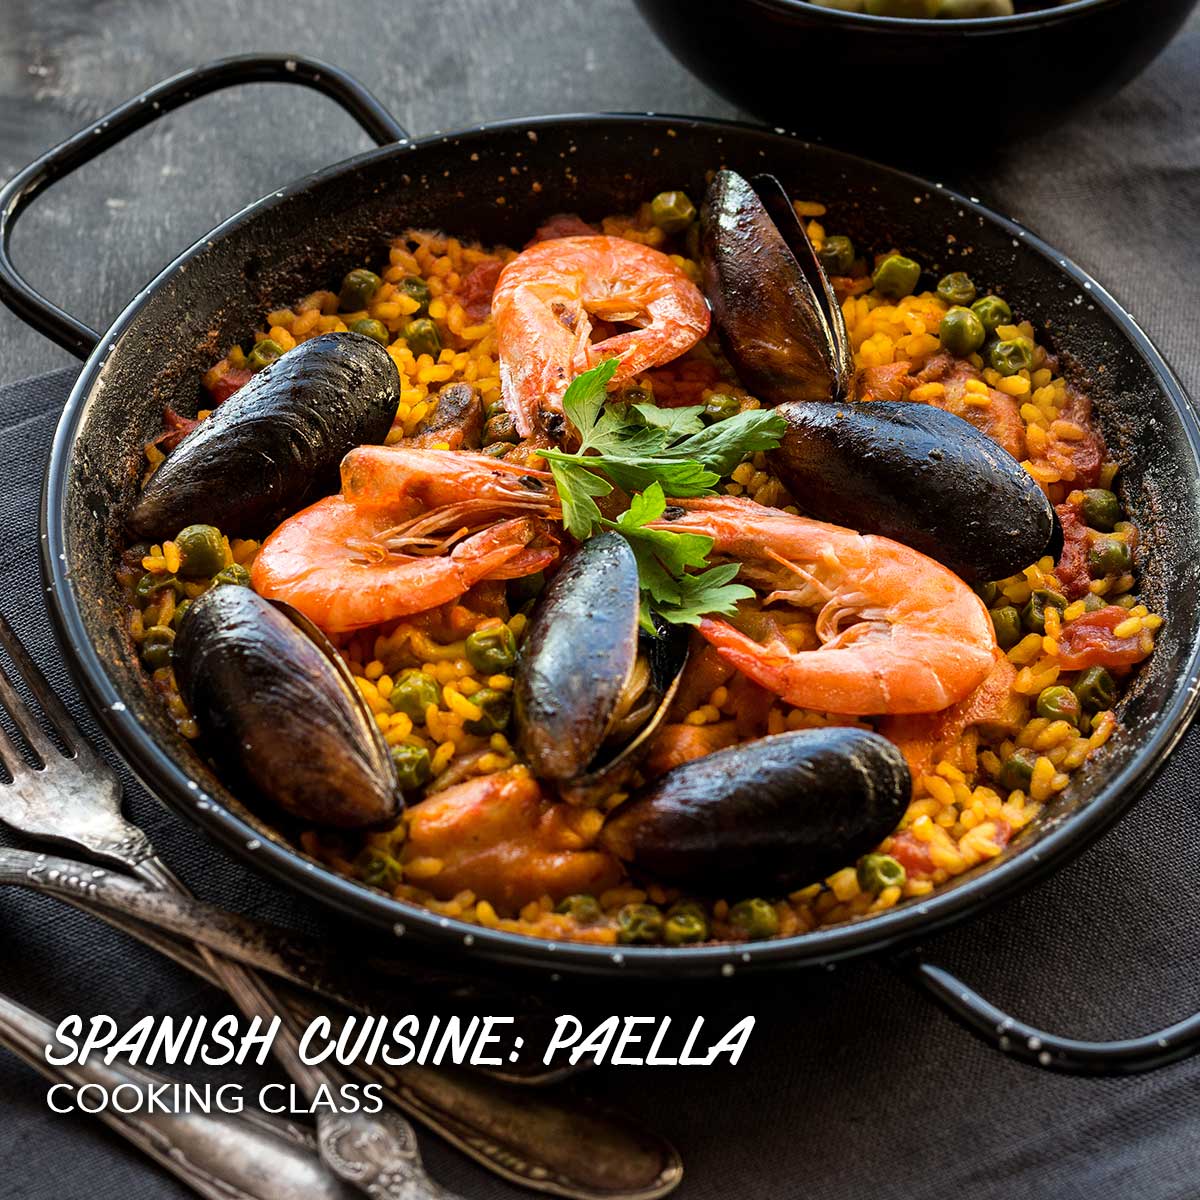 零失敗教煮西班牙海鮮飯 Spanish Cuisine: Paella